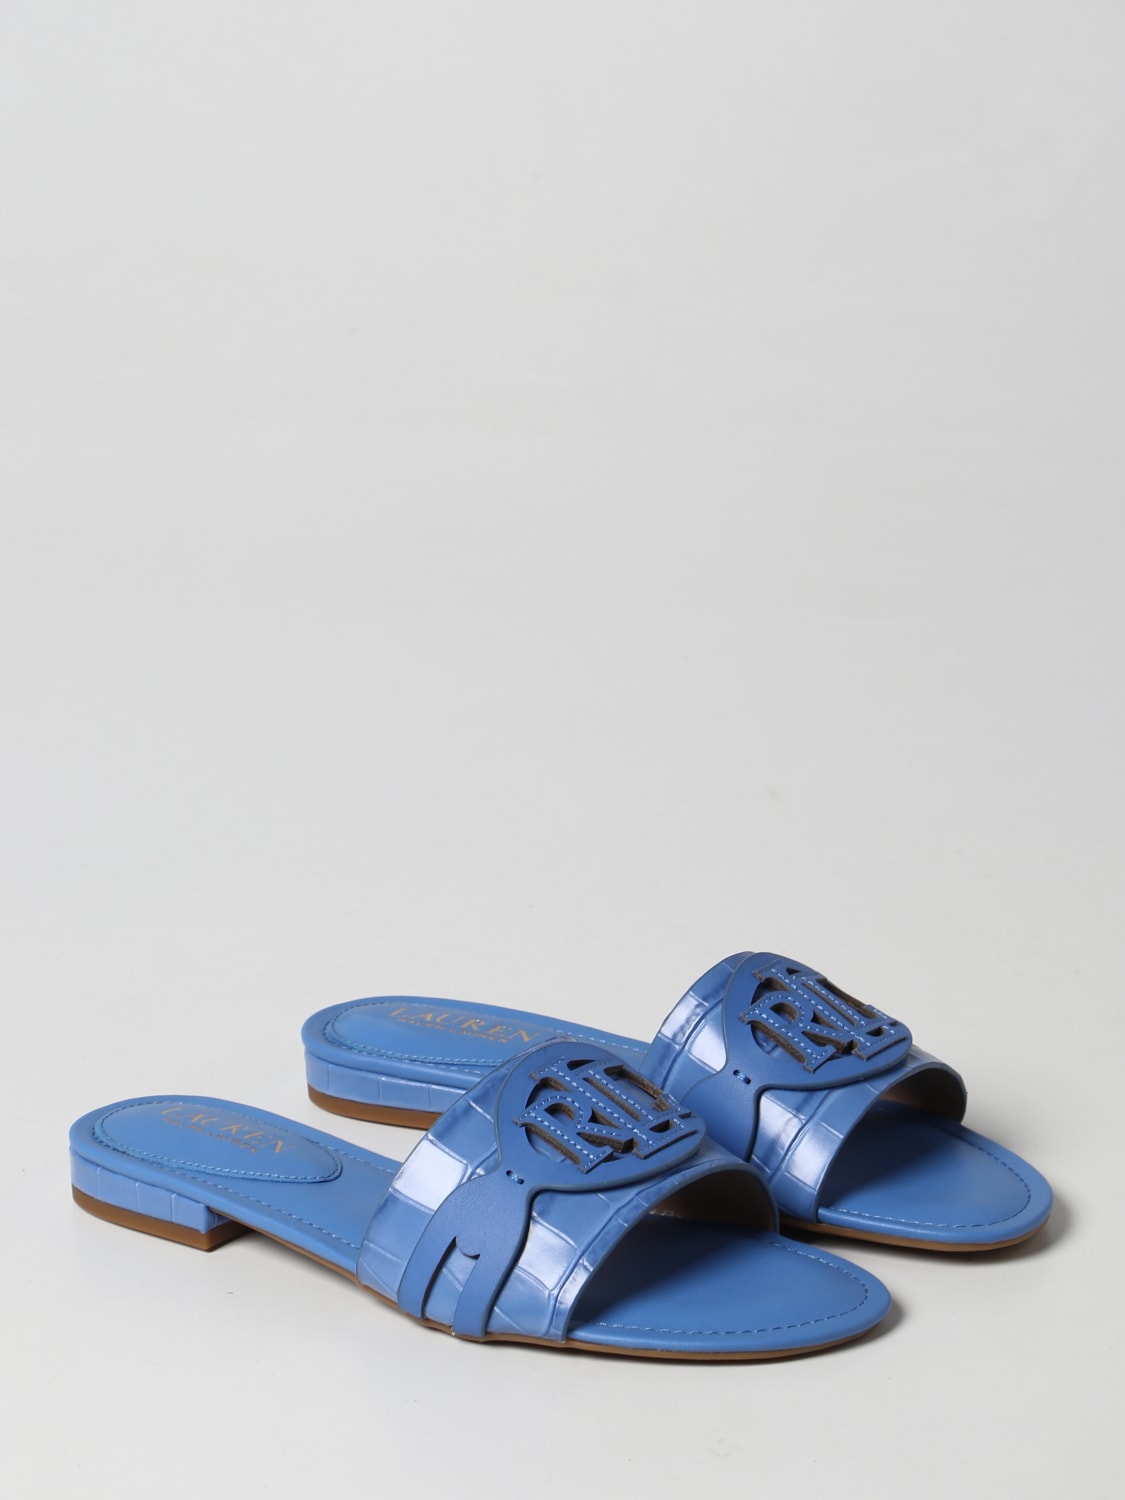 dark blue hermes slippers